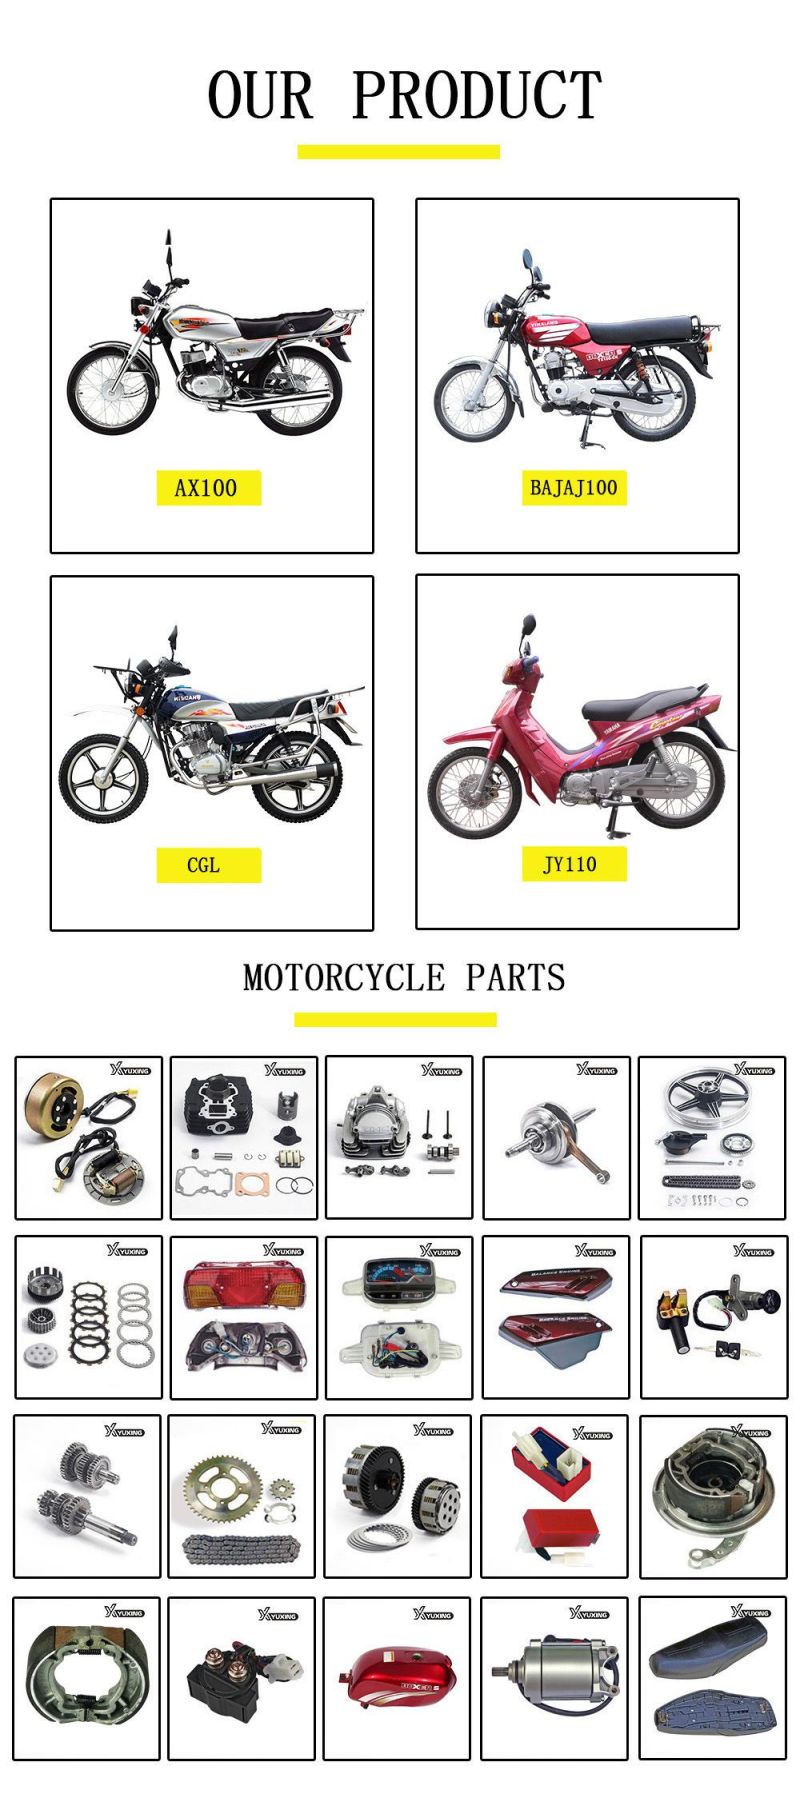 Motorcycle Cylinder/Carburetor/Camshaft/Clutch/Shock Absorber/ Lock Set/Engine/Motorcycle Parts